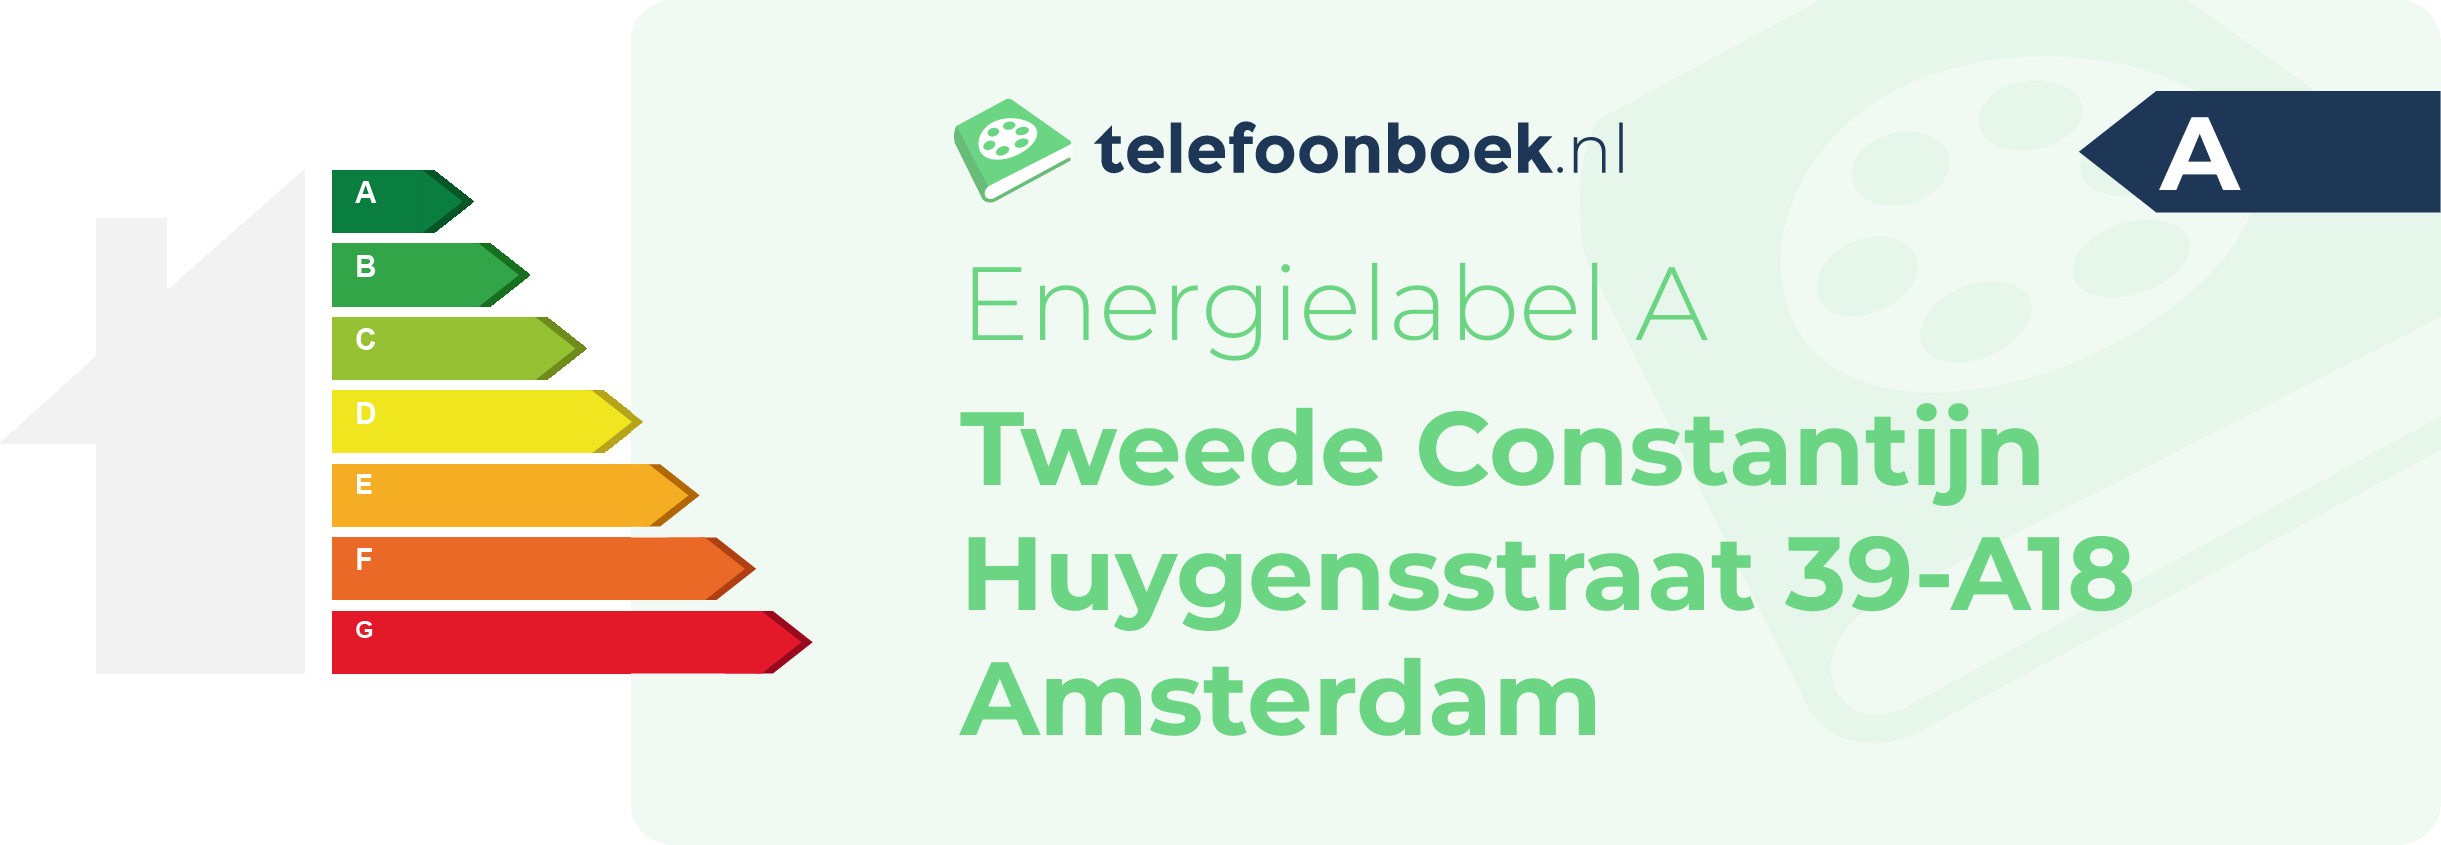 Energielabel Tweede Constantijn Huygensstraat 39-A18 Amsterdam